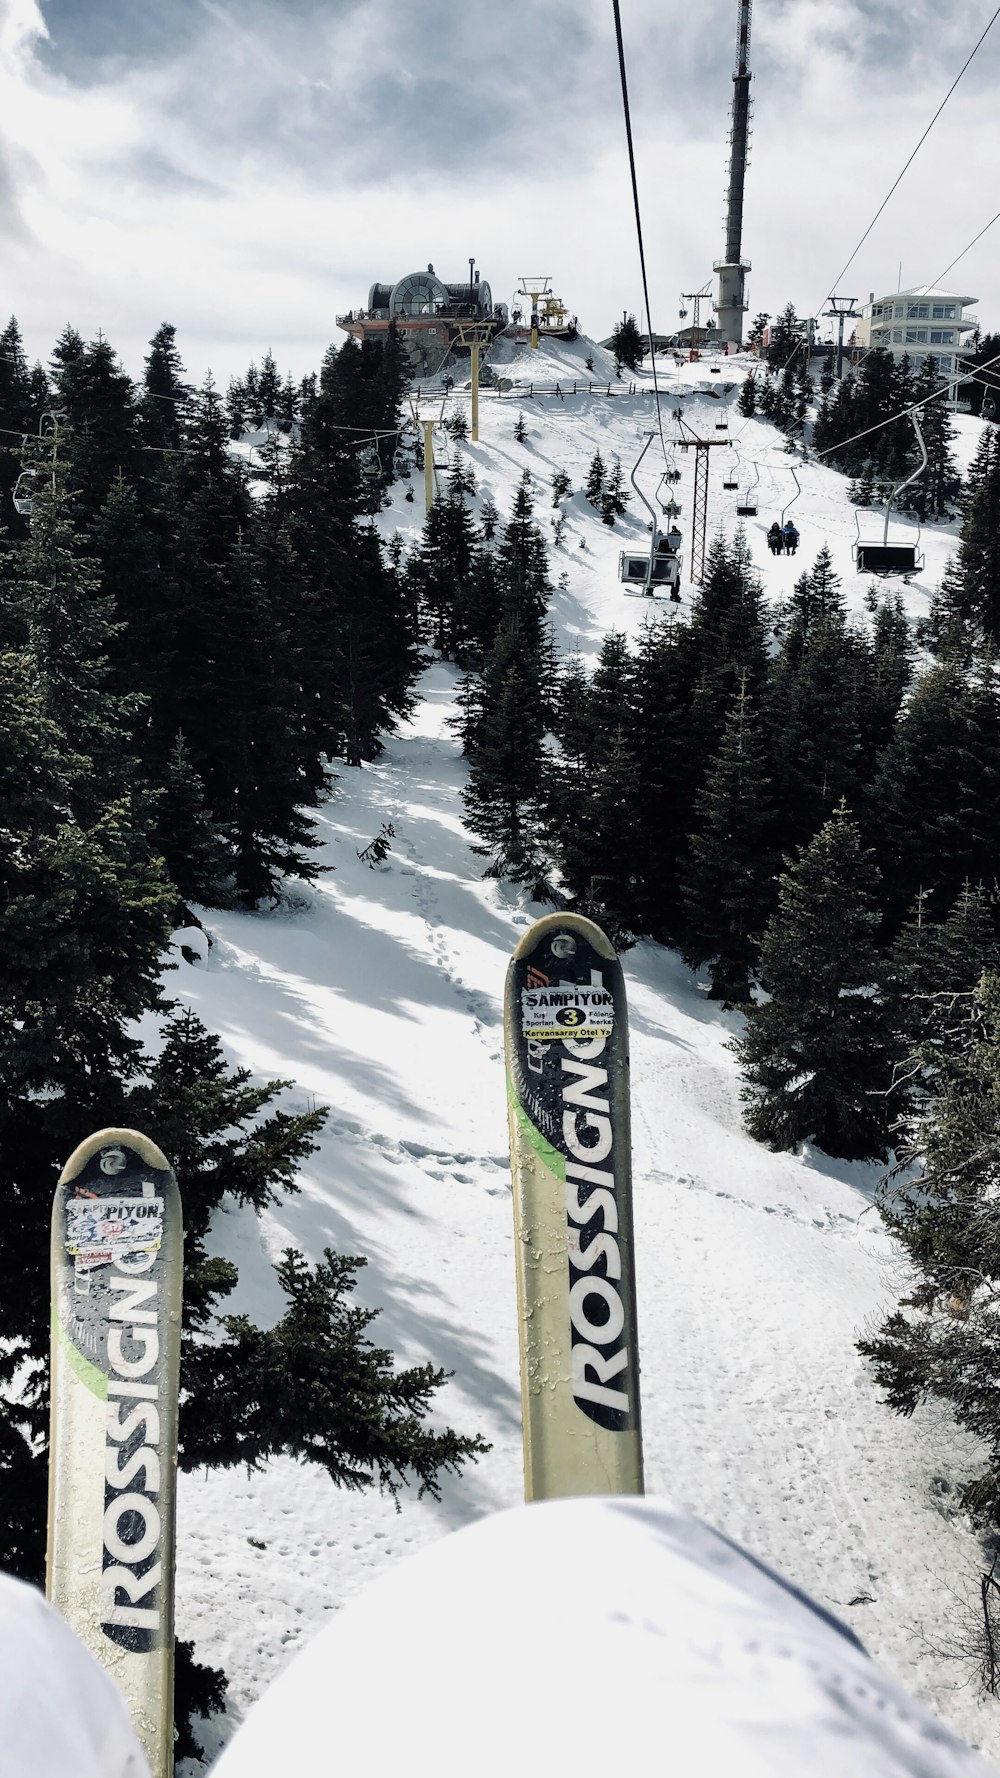 Persona montando una tabla de snowboard amarilla y negra en un terreno cubierto de nieve durante el día